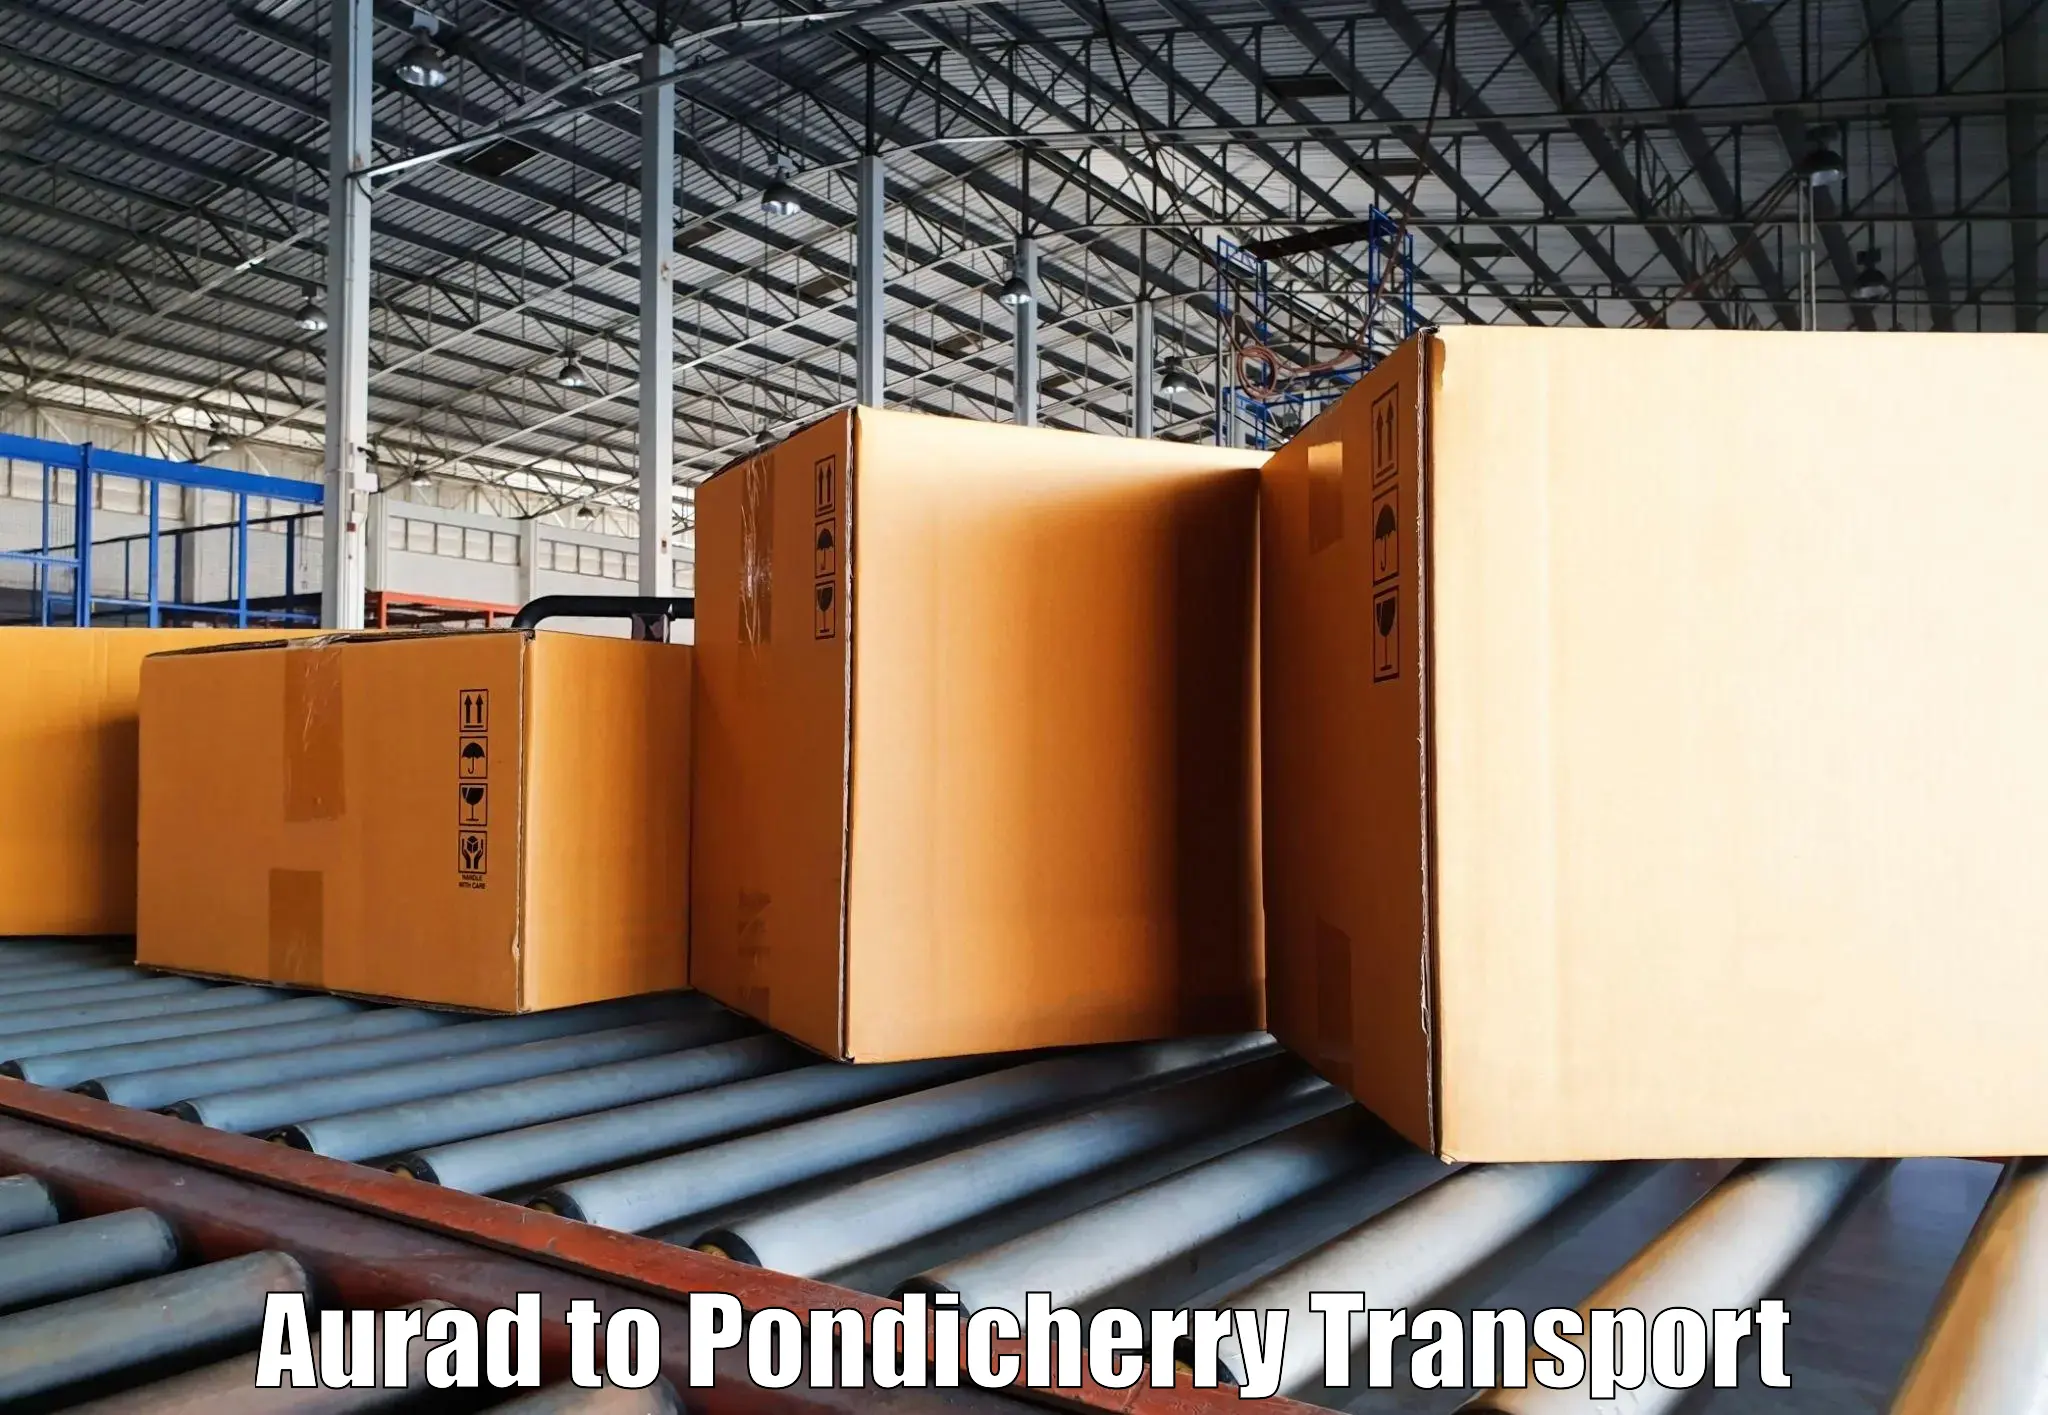 Furniture transport service Aurad to Pondicherry